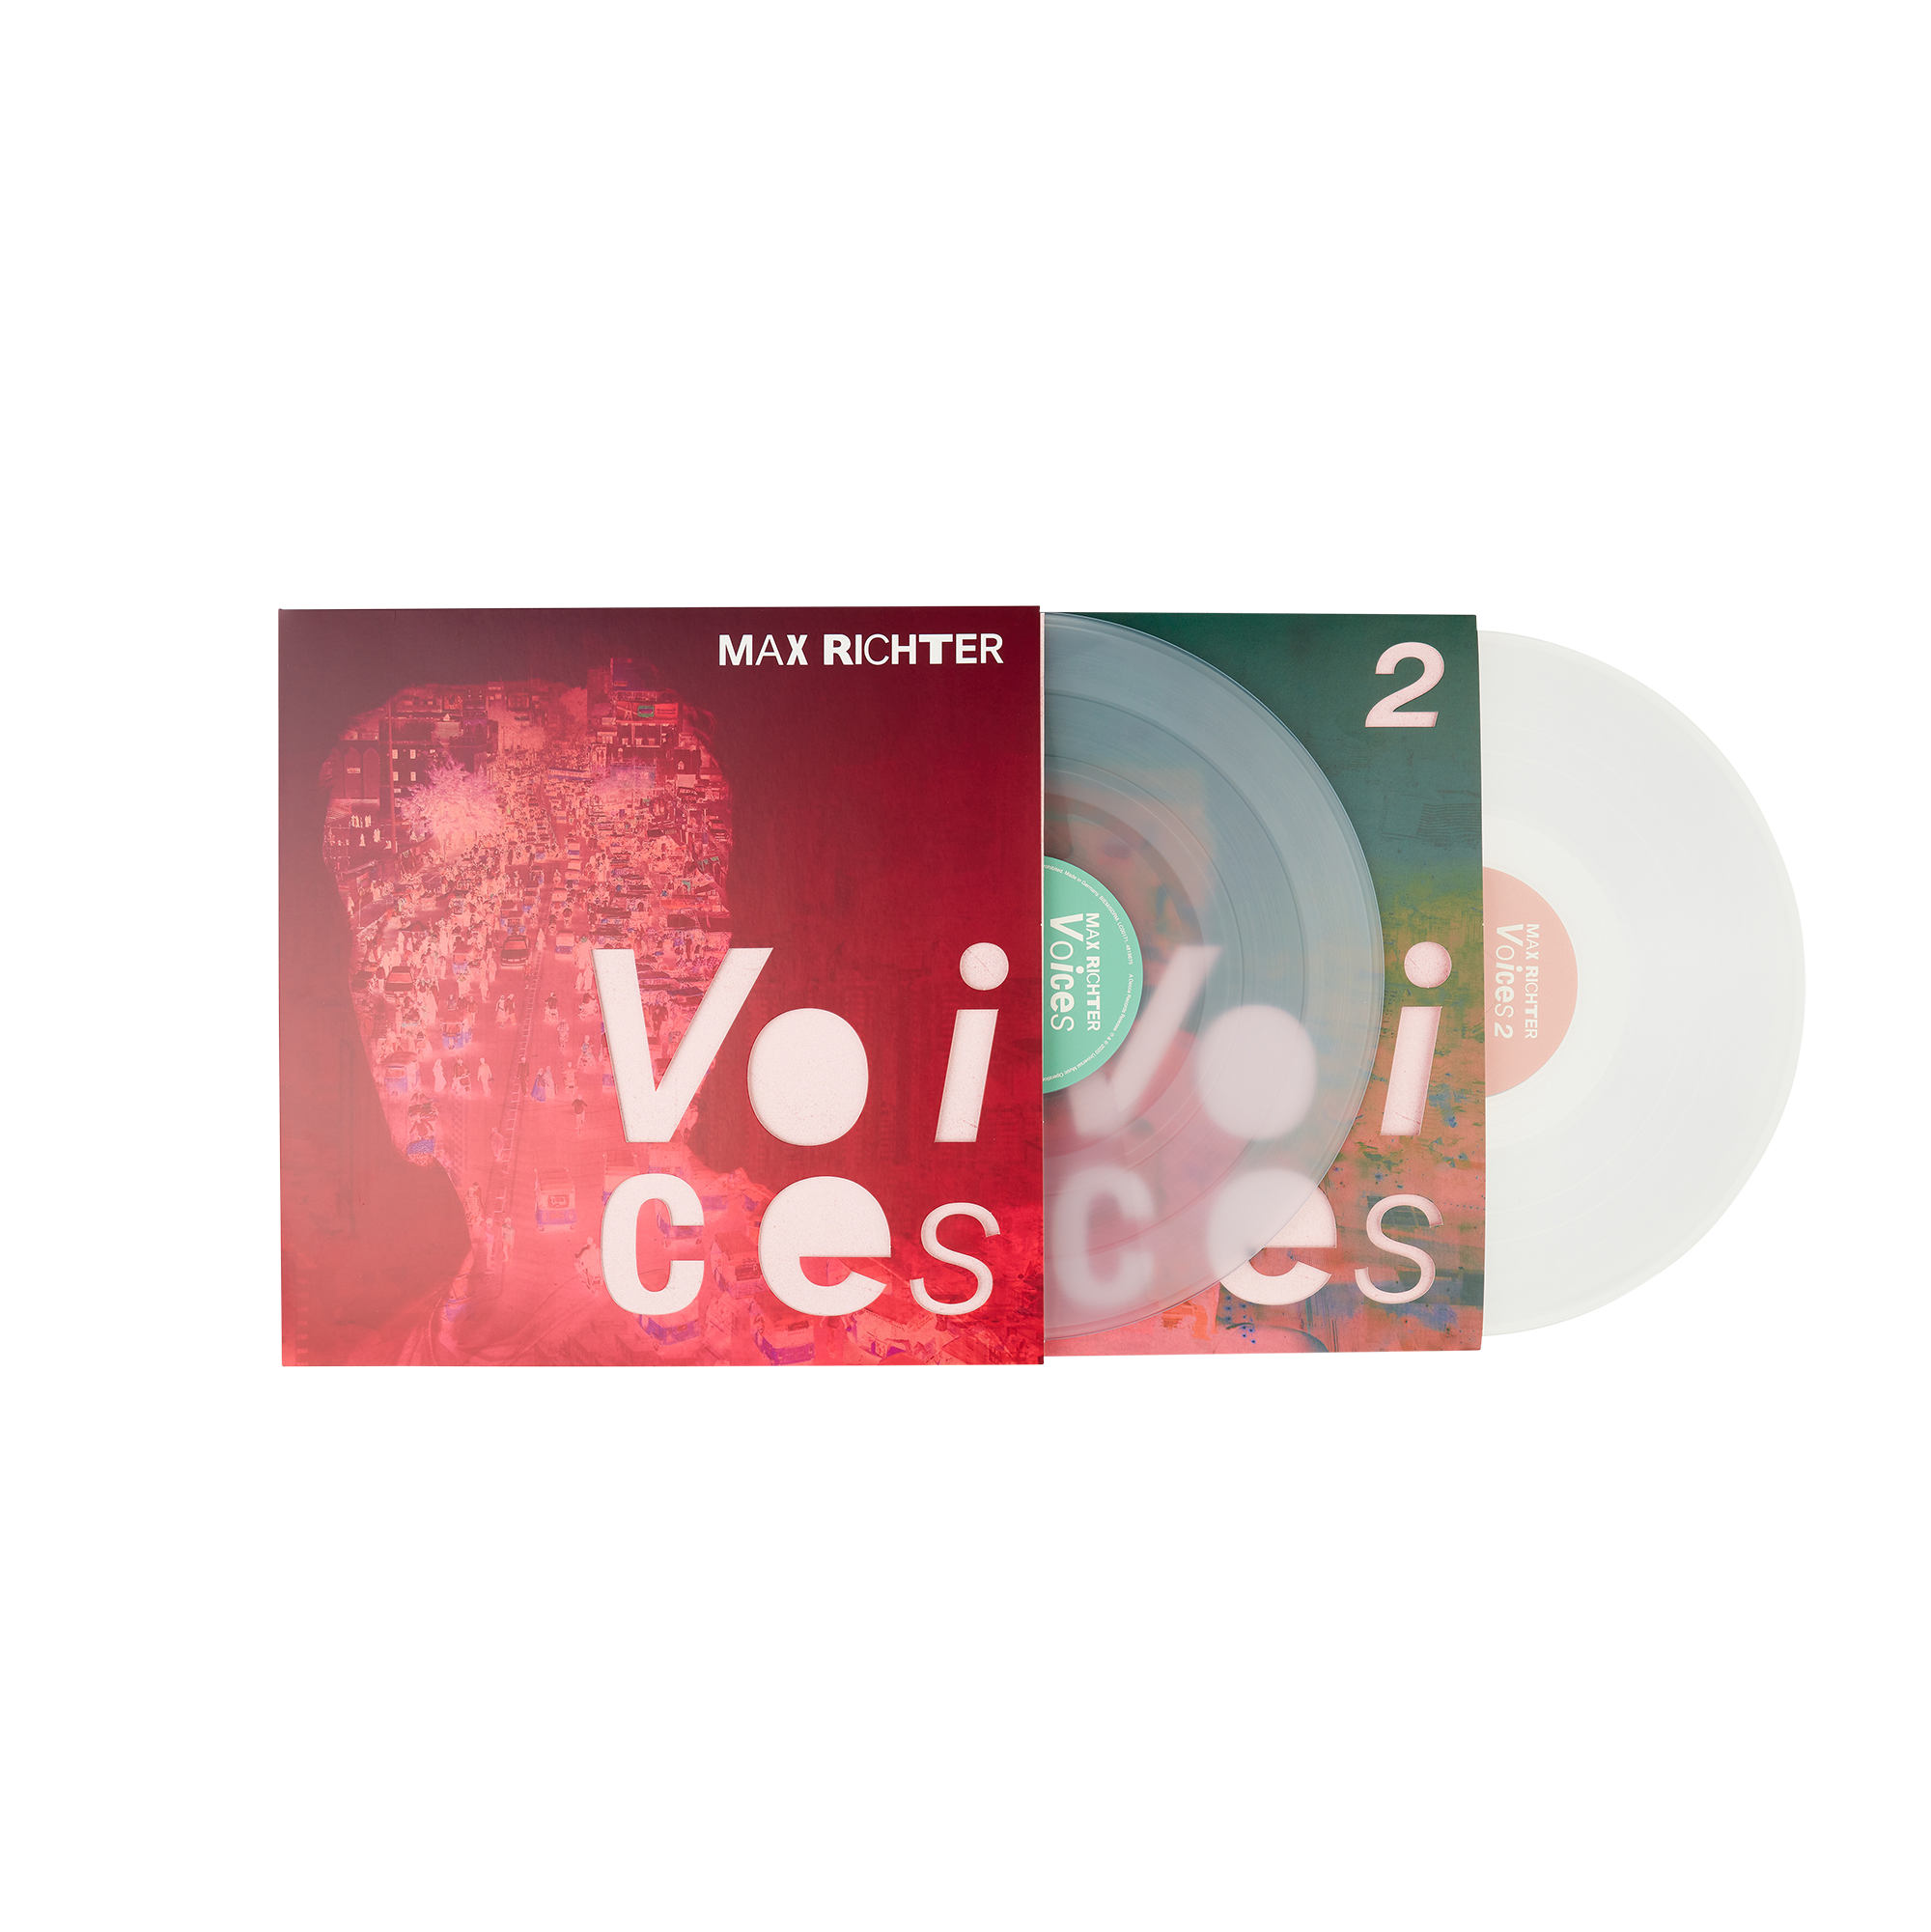 Max Richter - Voices 2: Exclusive Clear Vinyl LP w/ Etched D-Side